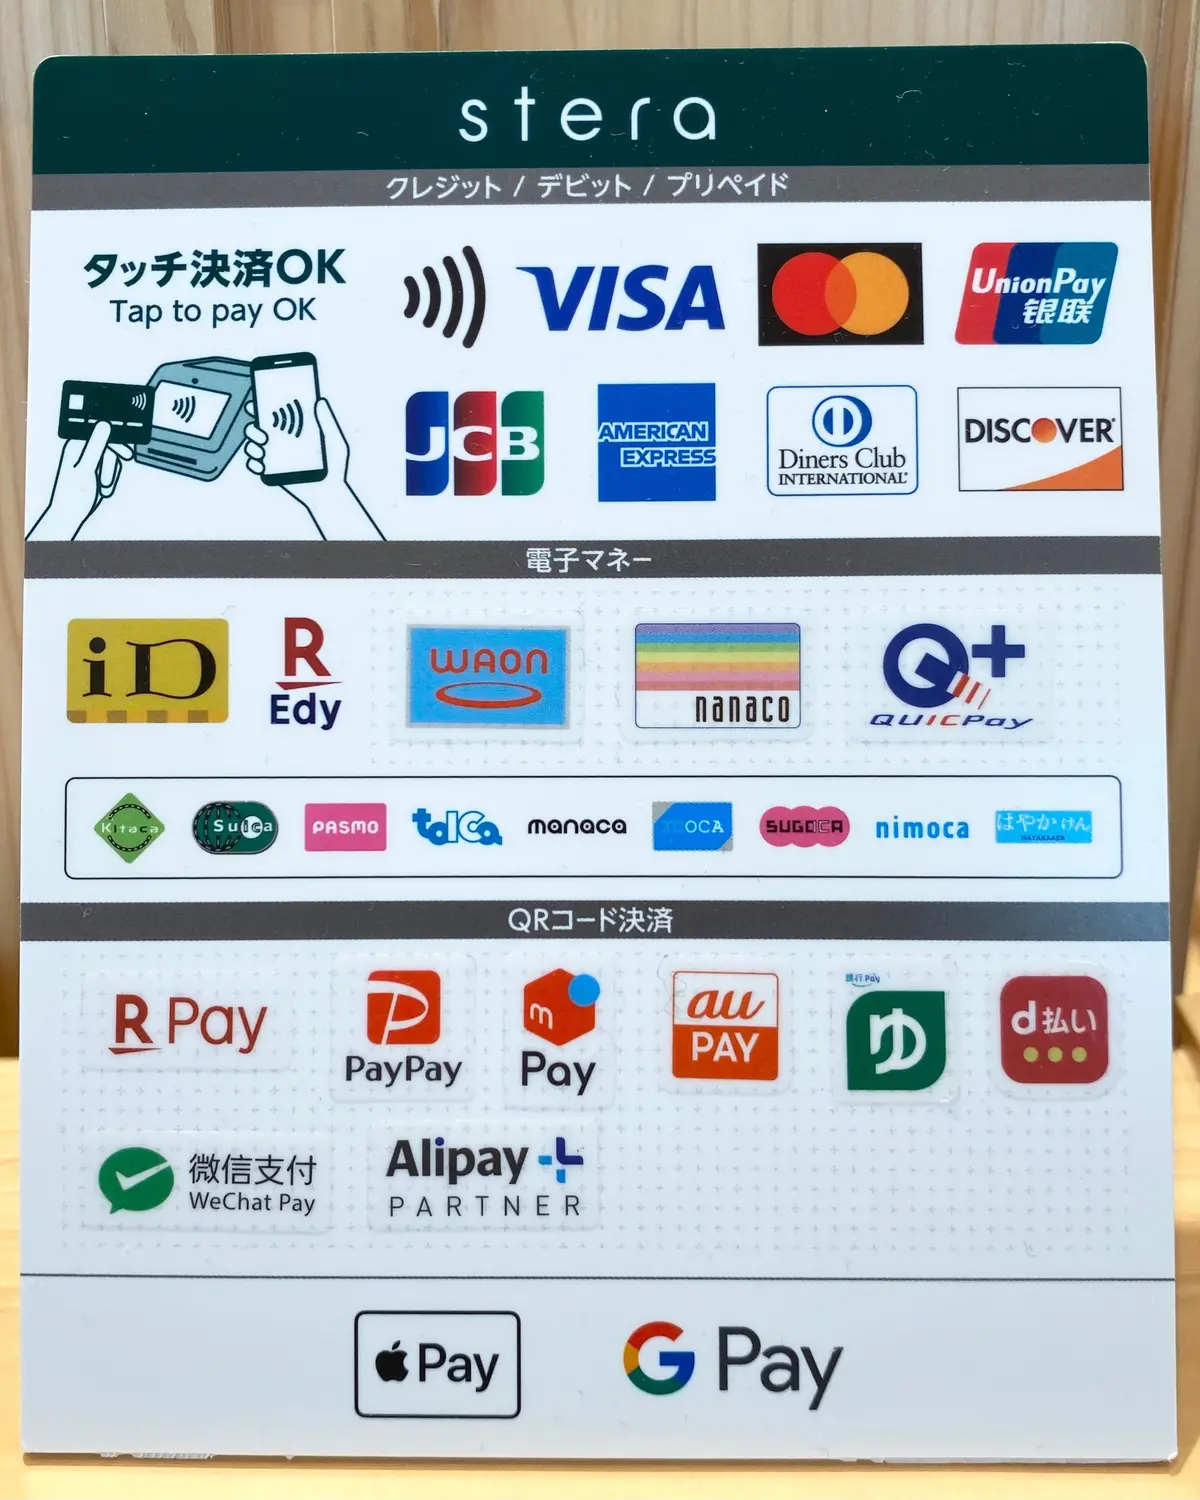 『ジブリパーク』内で使えるクレジットカードや電子マネー決済方法